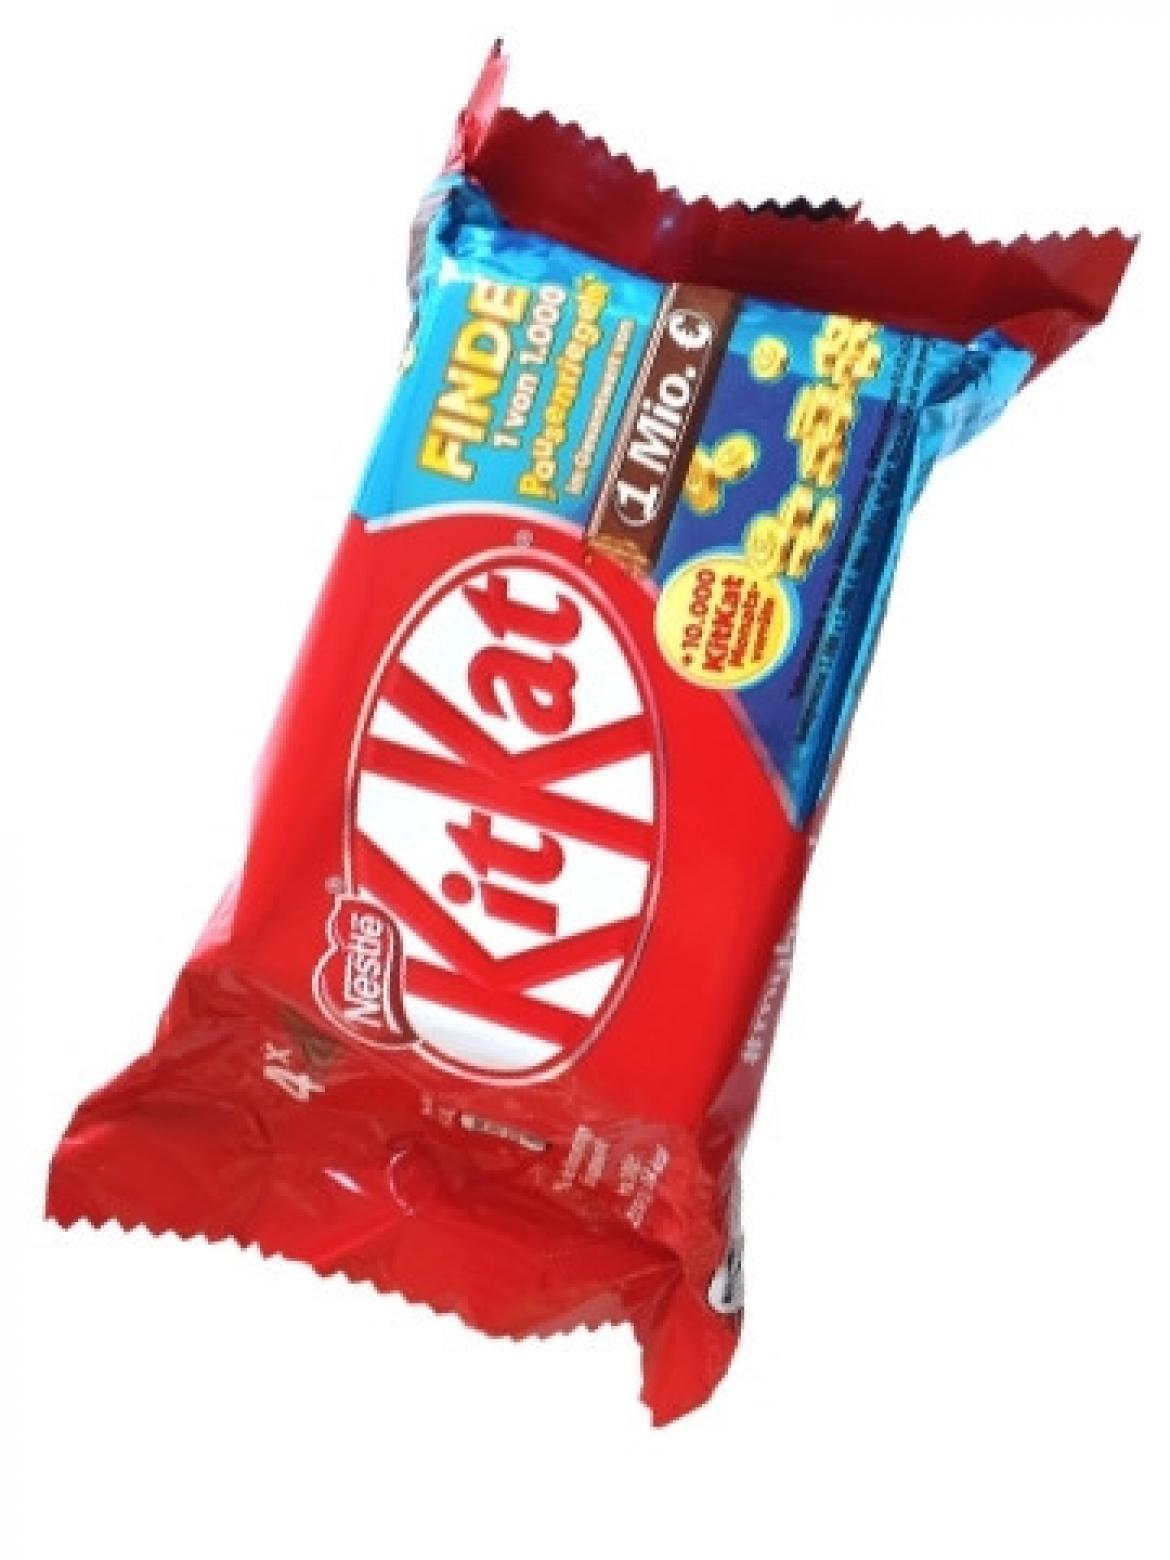 Mogelpackung des Jahres: Kandidat 3 | »KitKat« von Nestlé 2021 (jpg)